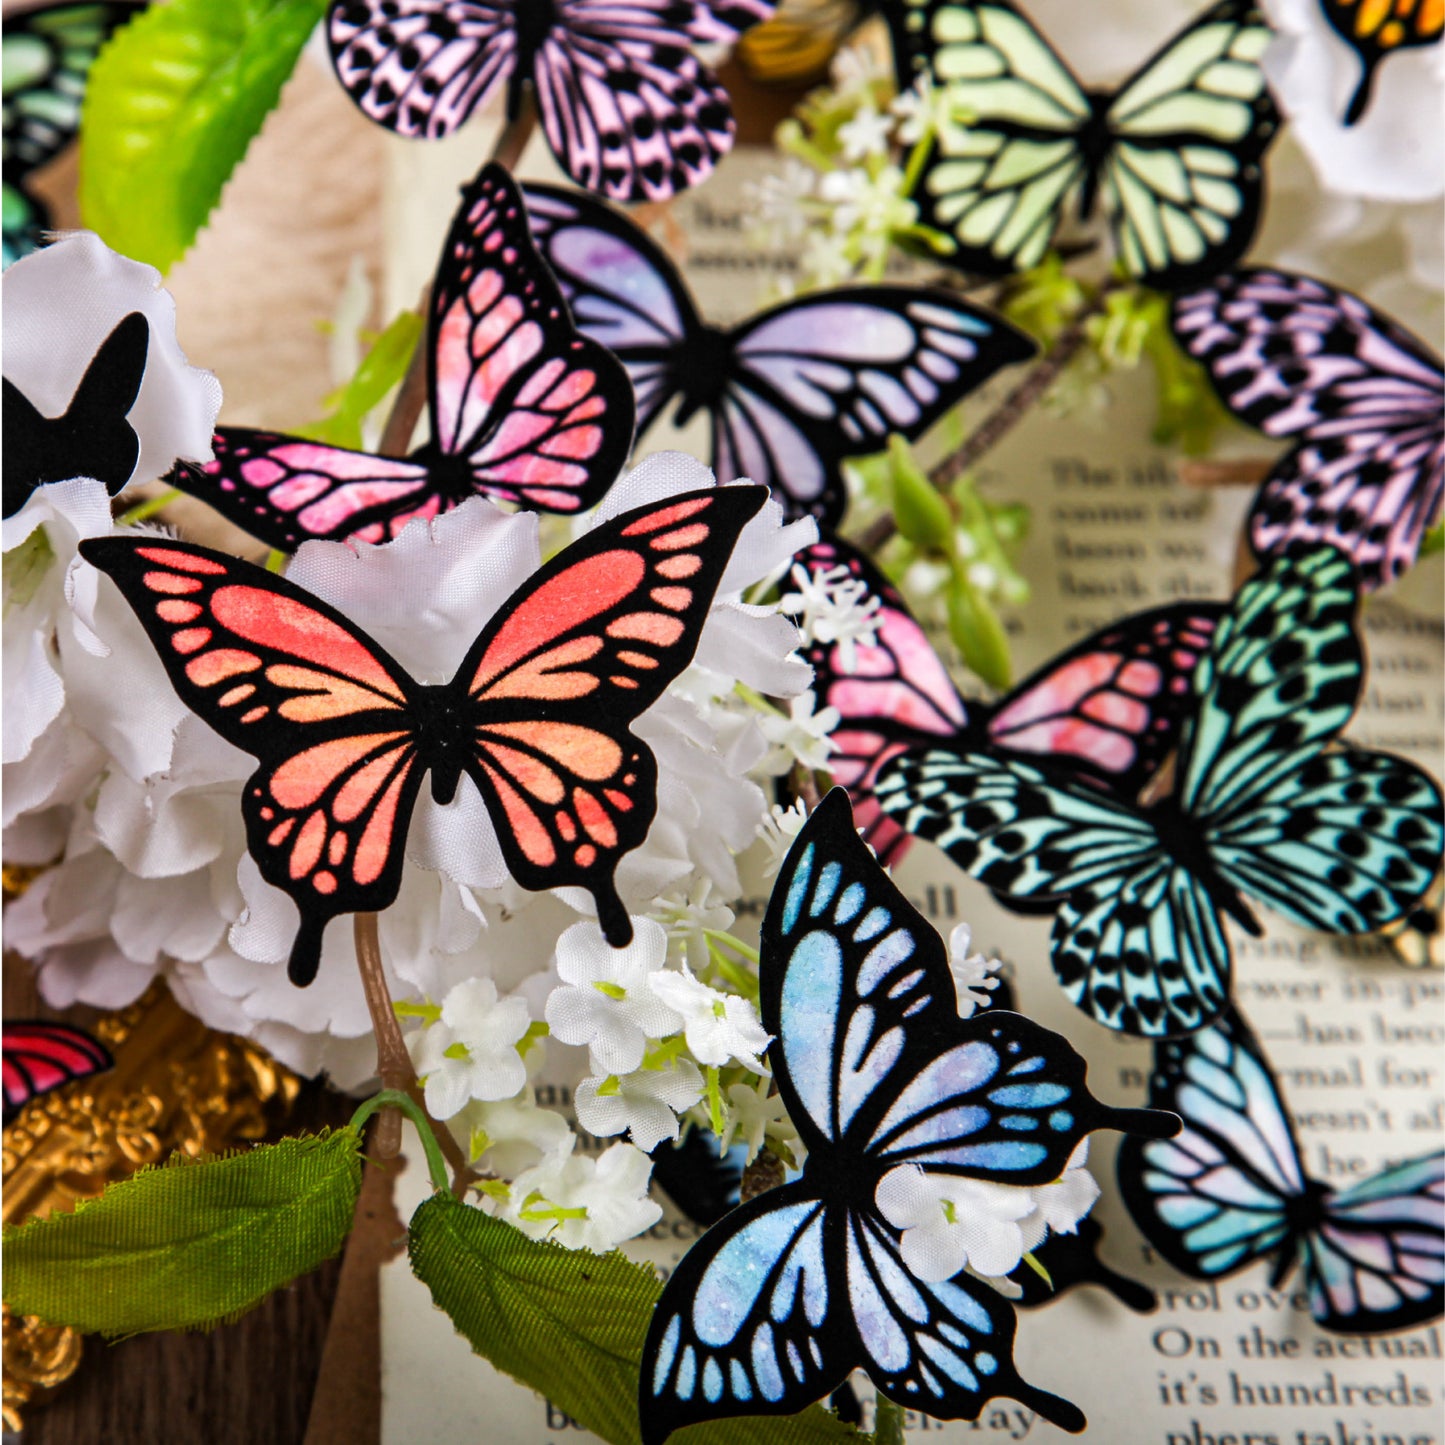 18 Pcs Flocked Butterfly Scrapbook Supplies CWXl